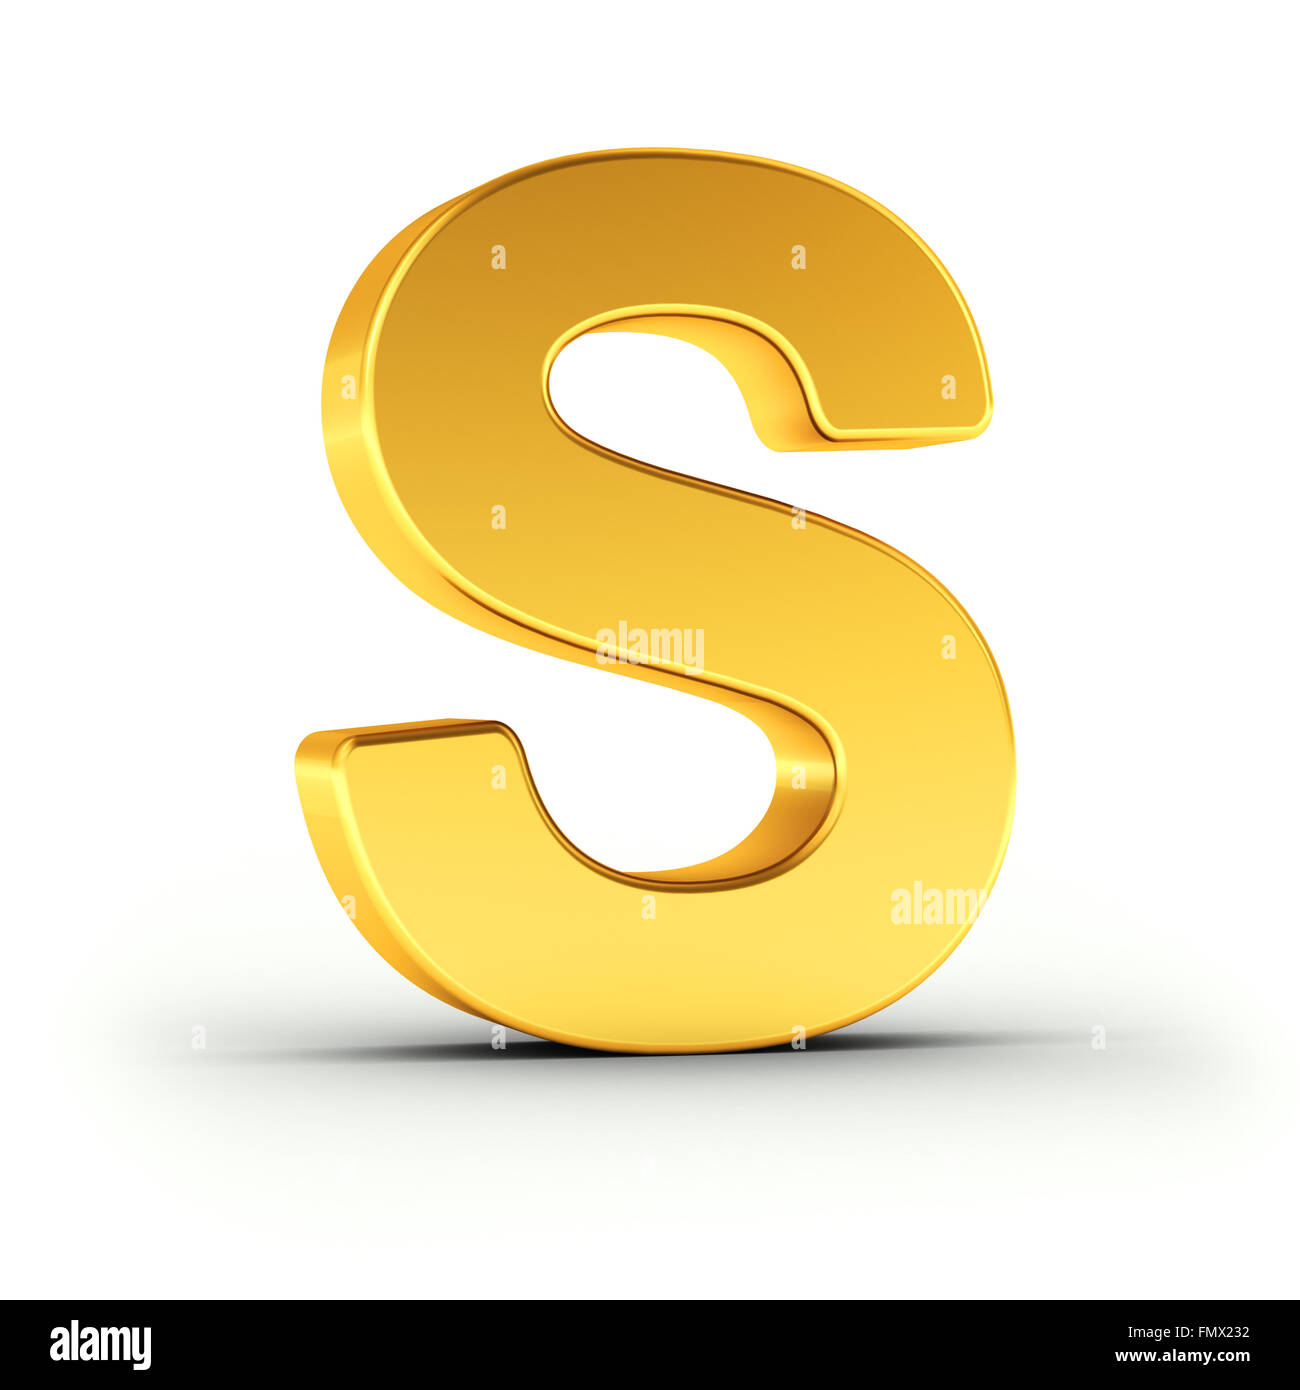 Der Buchstabe S als polierten goldenen Objekt Stockfoto